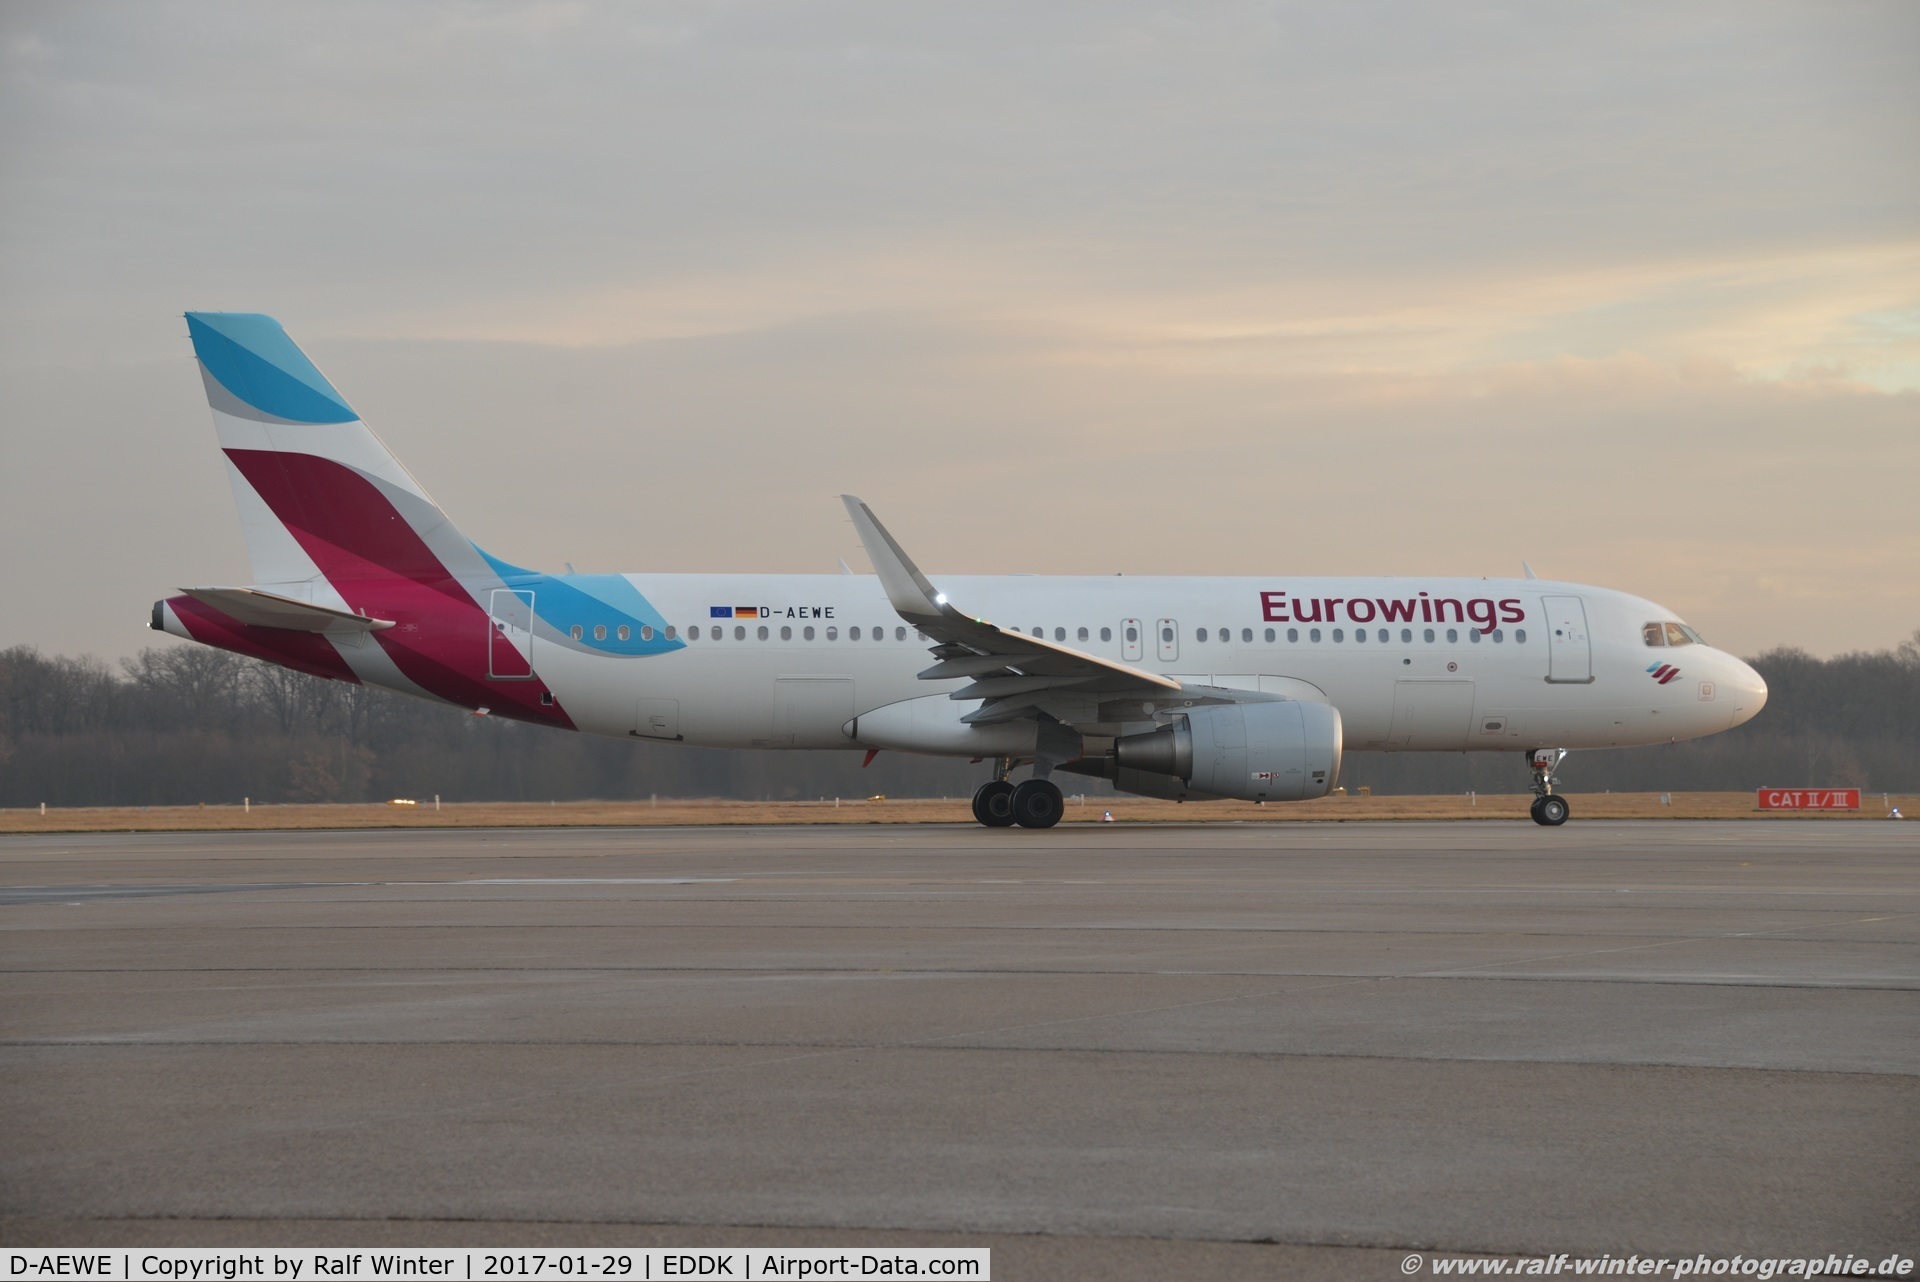 D-AEWE, 2016 Airbus A320-214 C/N 7056, Airbus A320-214(W) - EW EWG Eurowings - 7056 - D-AEWE - 29.01.2017 - CGN